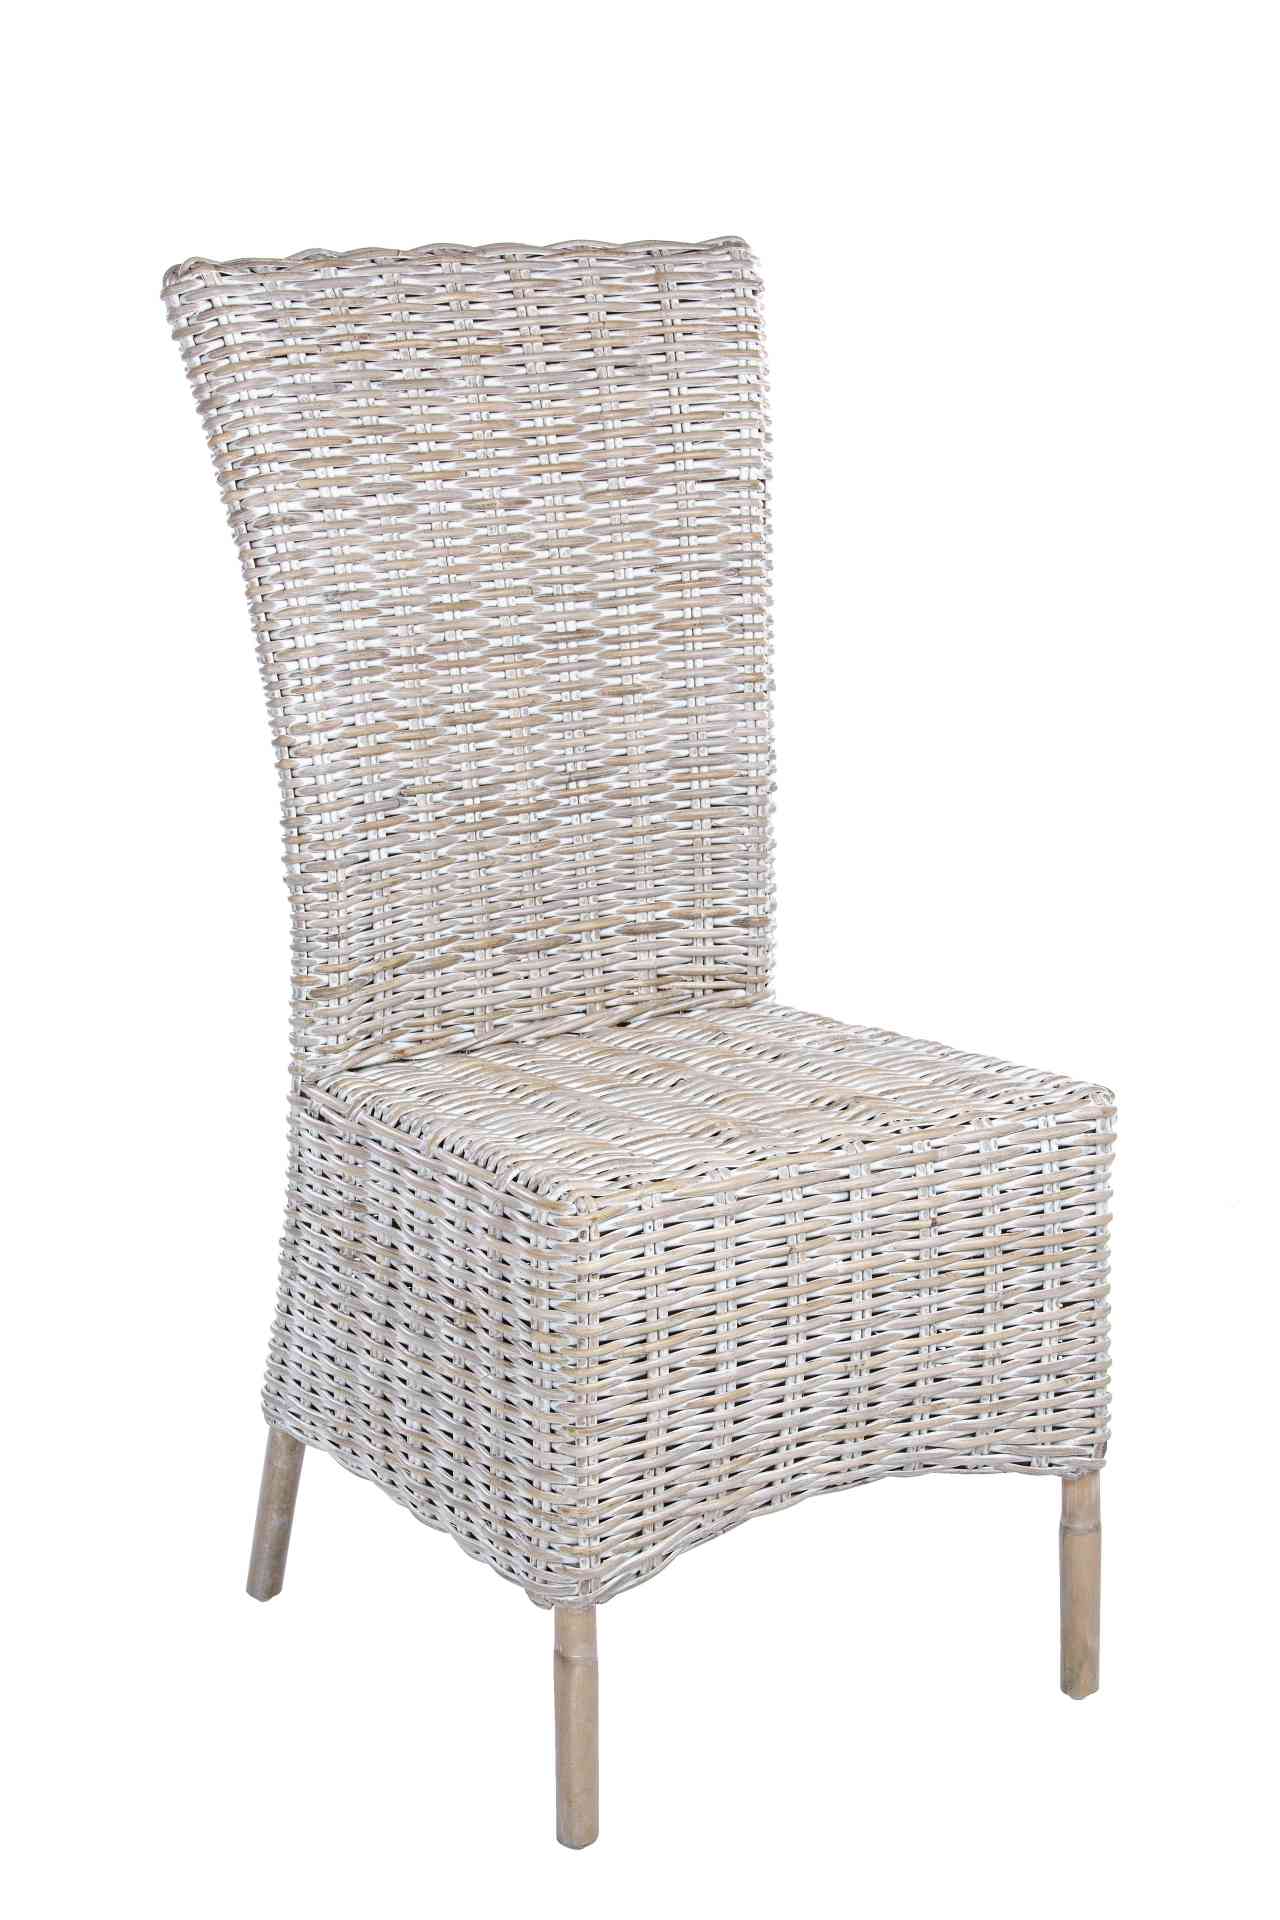 Der Stuhl Isla überzeugt mit seinem klassischem Design. Gefertigt wurde der Stuhl aus Rattan und Kabugeflecht, welches einen natürlichen Farbton besitzt. Der Stuhl wird inklusive Sitzkissen aus Leinen geliefert. Die Sitzhöhe beträgt 50 cm.